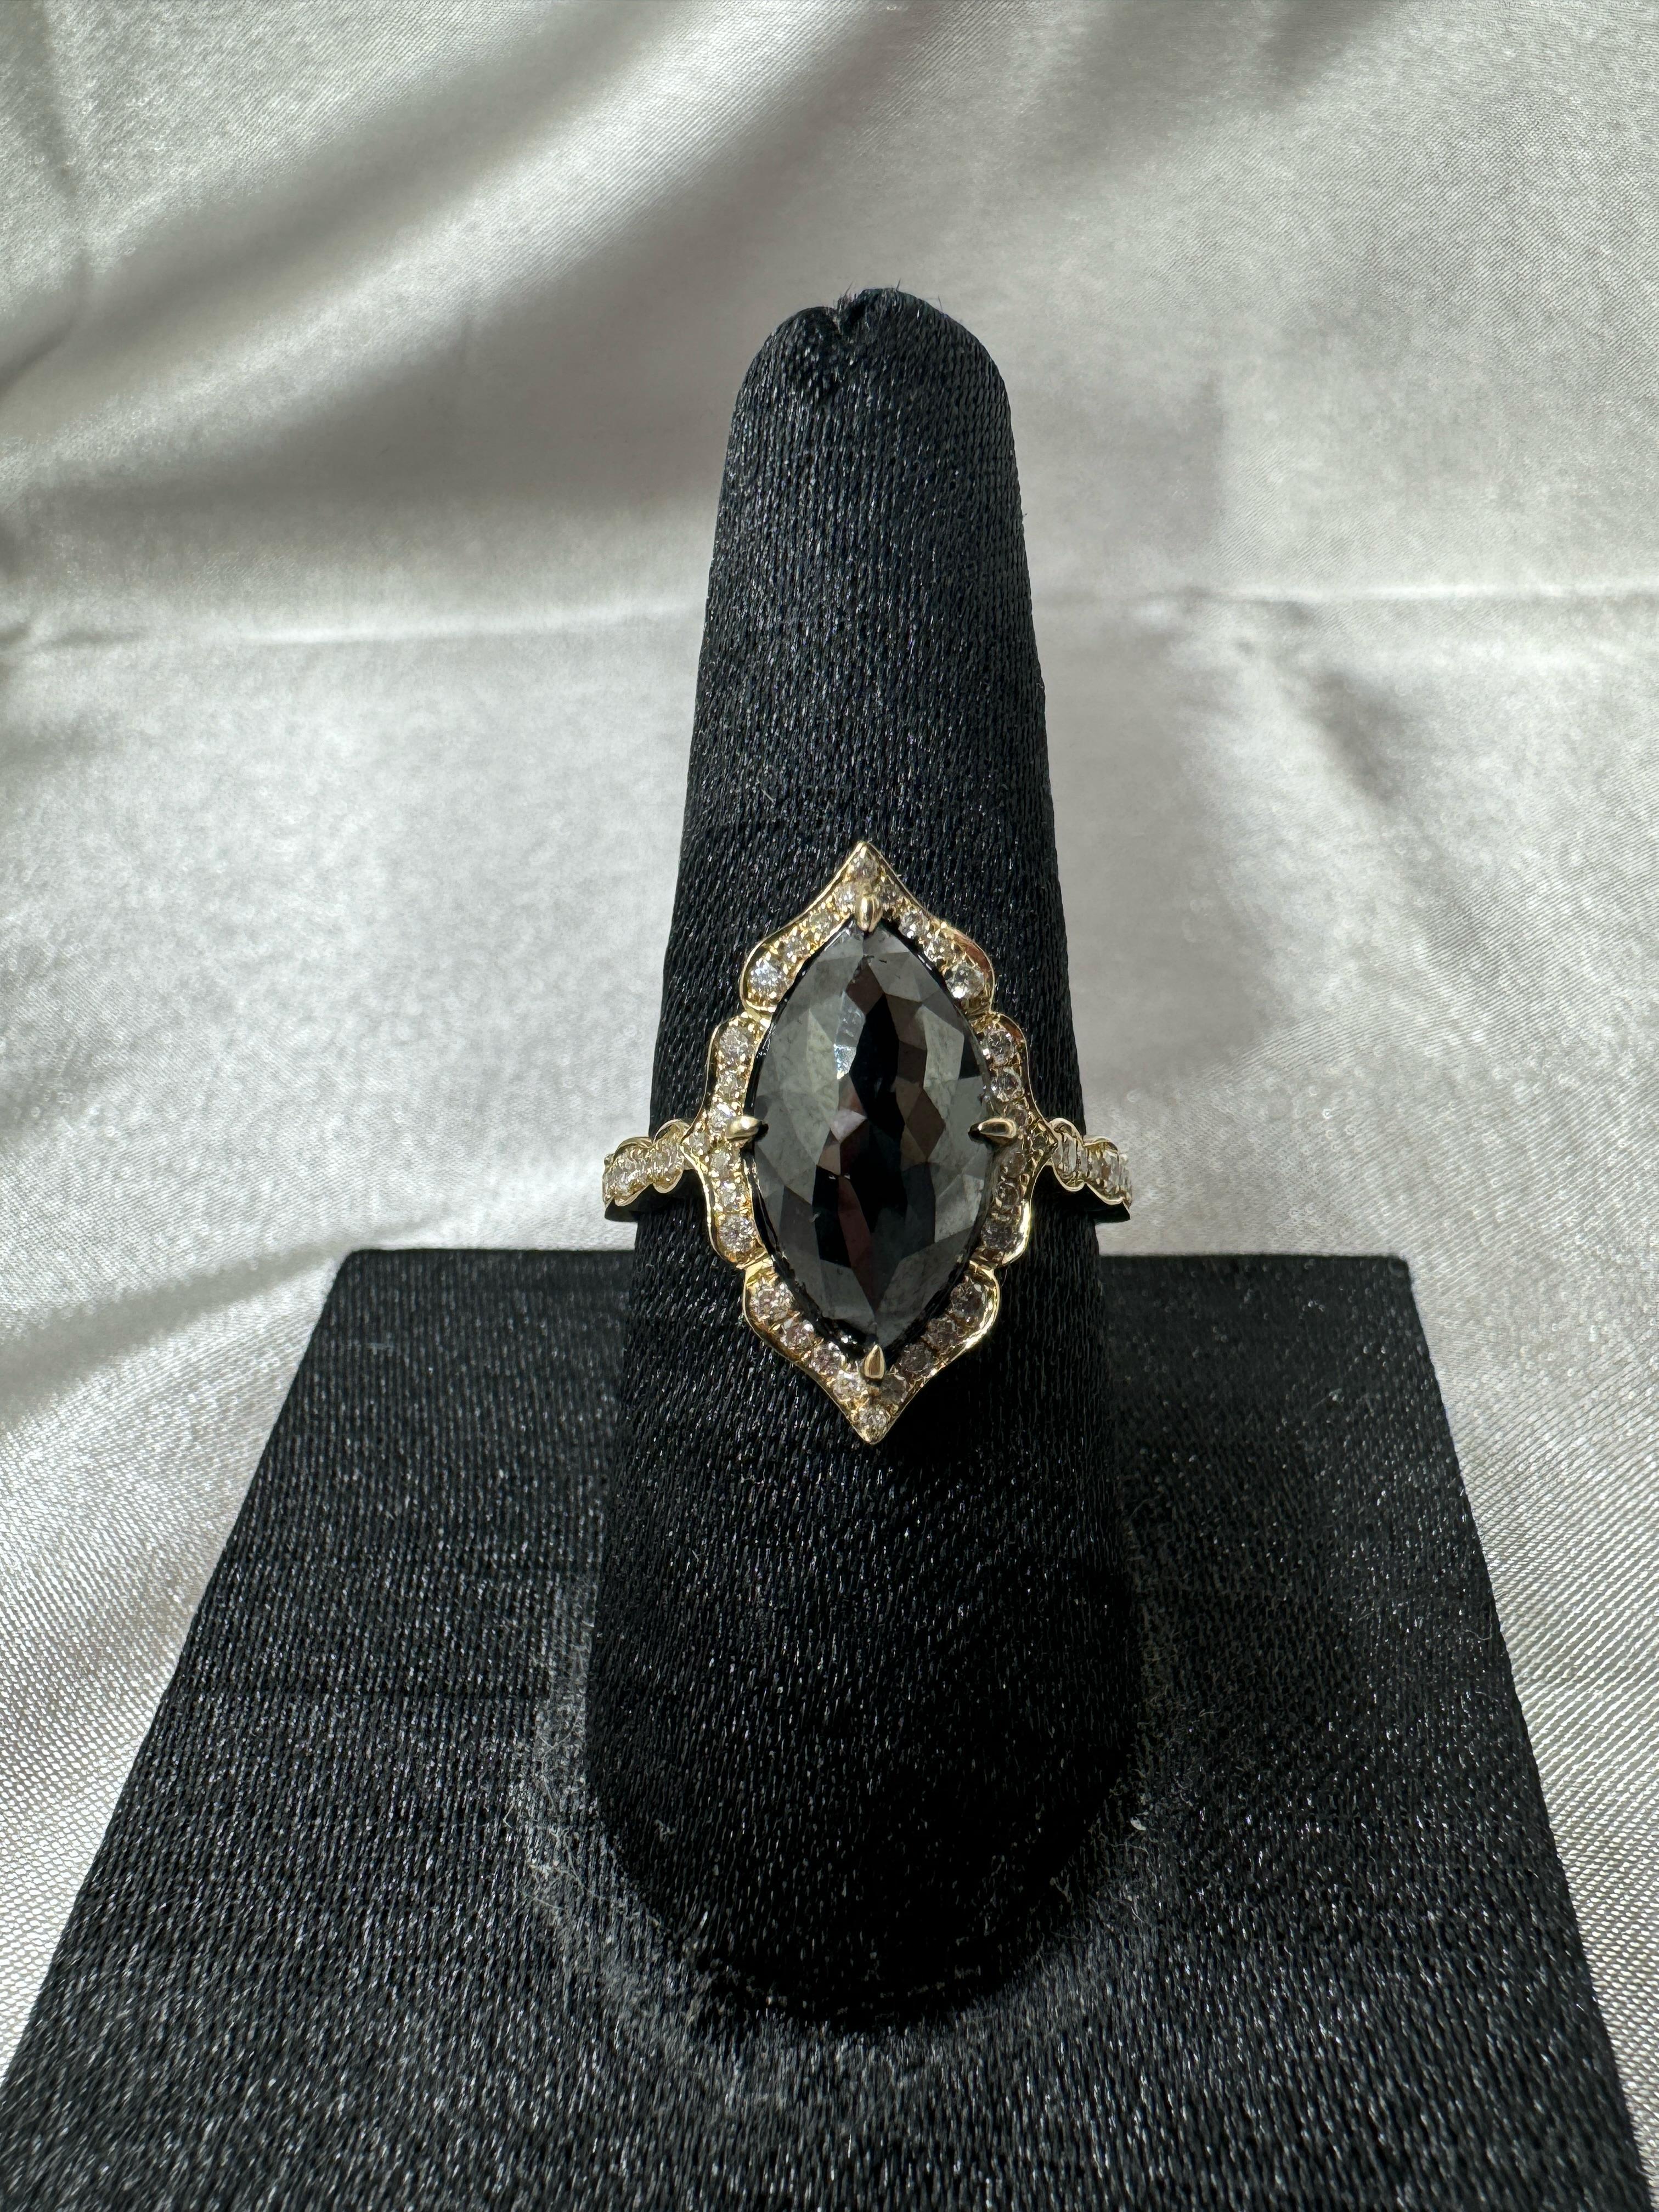 IGI CERTIFIED Vintage 3.63 Carat Black Diamond Ring in 14 Karat Yellow Gold For Sale 1